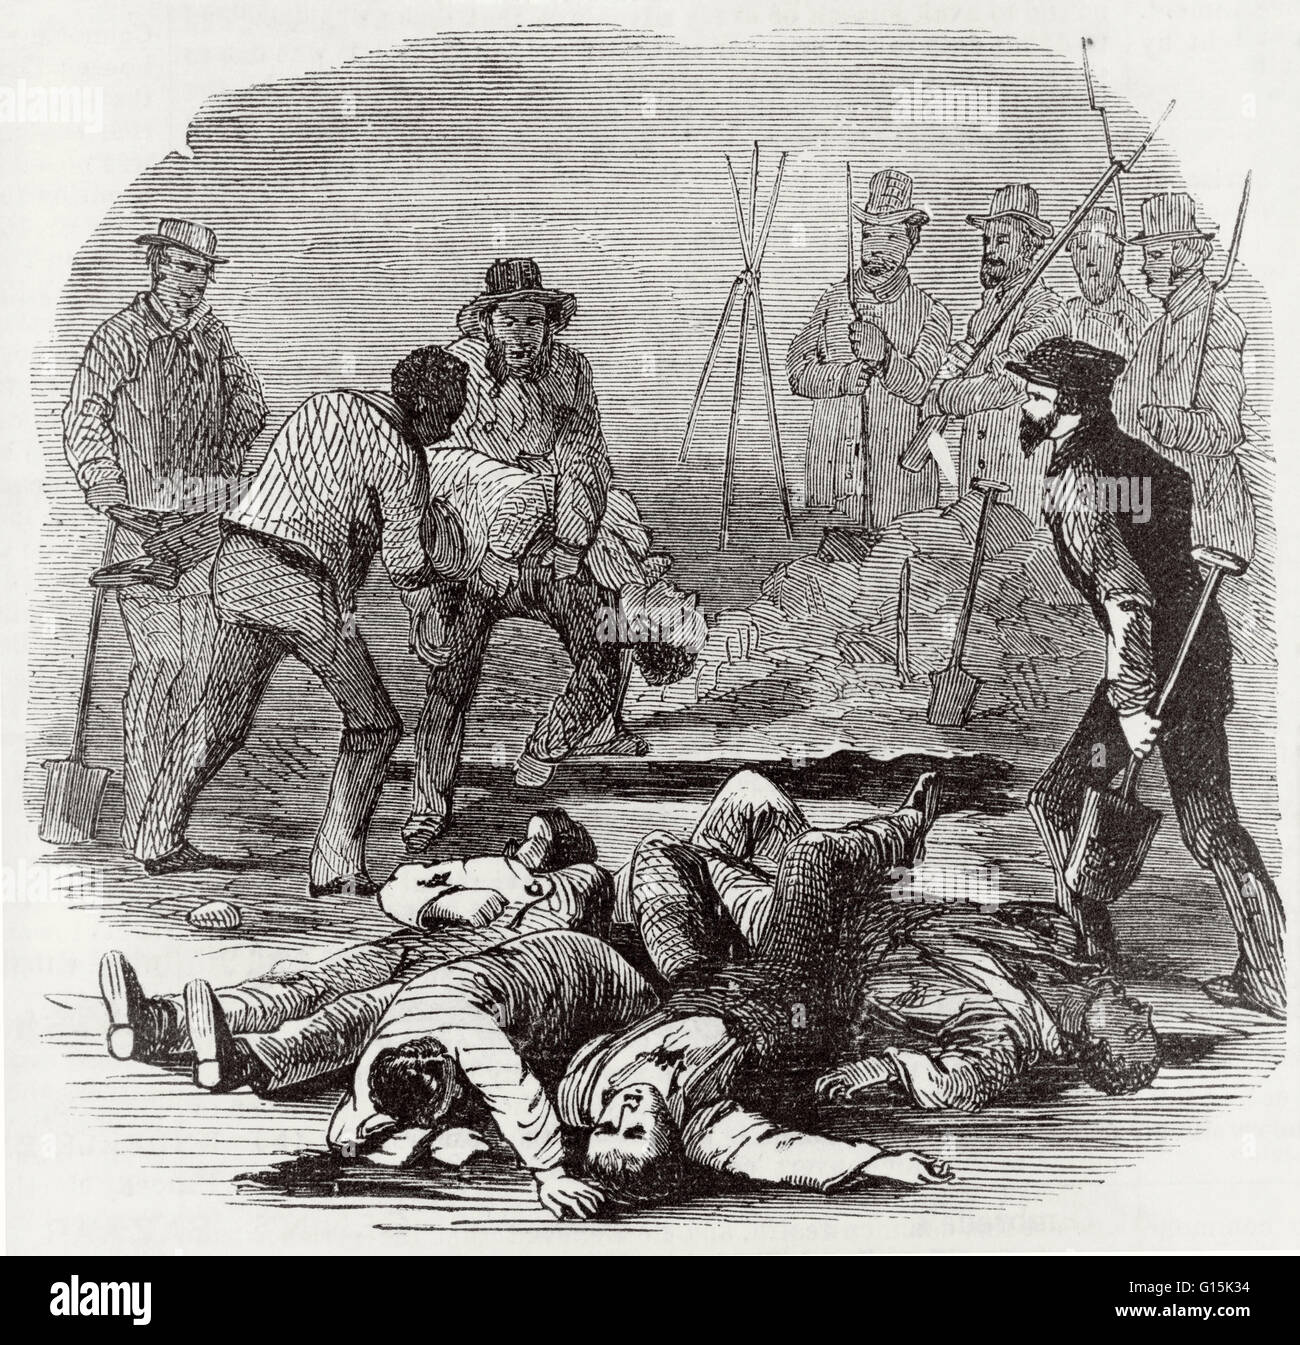 Ilustración que muestra el entierro de los muertos insurgentes muertos en John Brown's raid en Harpers Ferry. La incursión fue un intento por blanco abolicionista John Brown para iniciar una rebelión de esclavos armados por la incautación de un arsenal de los Estados Unidos de Harpers Ferry, en Virginia, en 185 Foto de stock